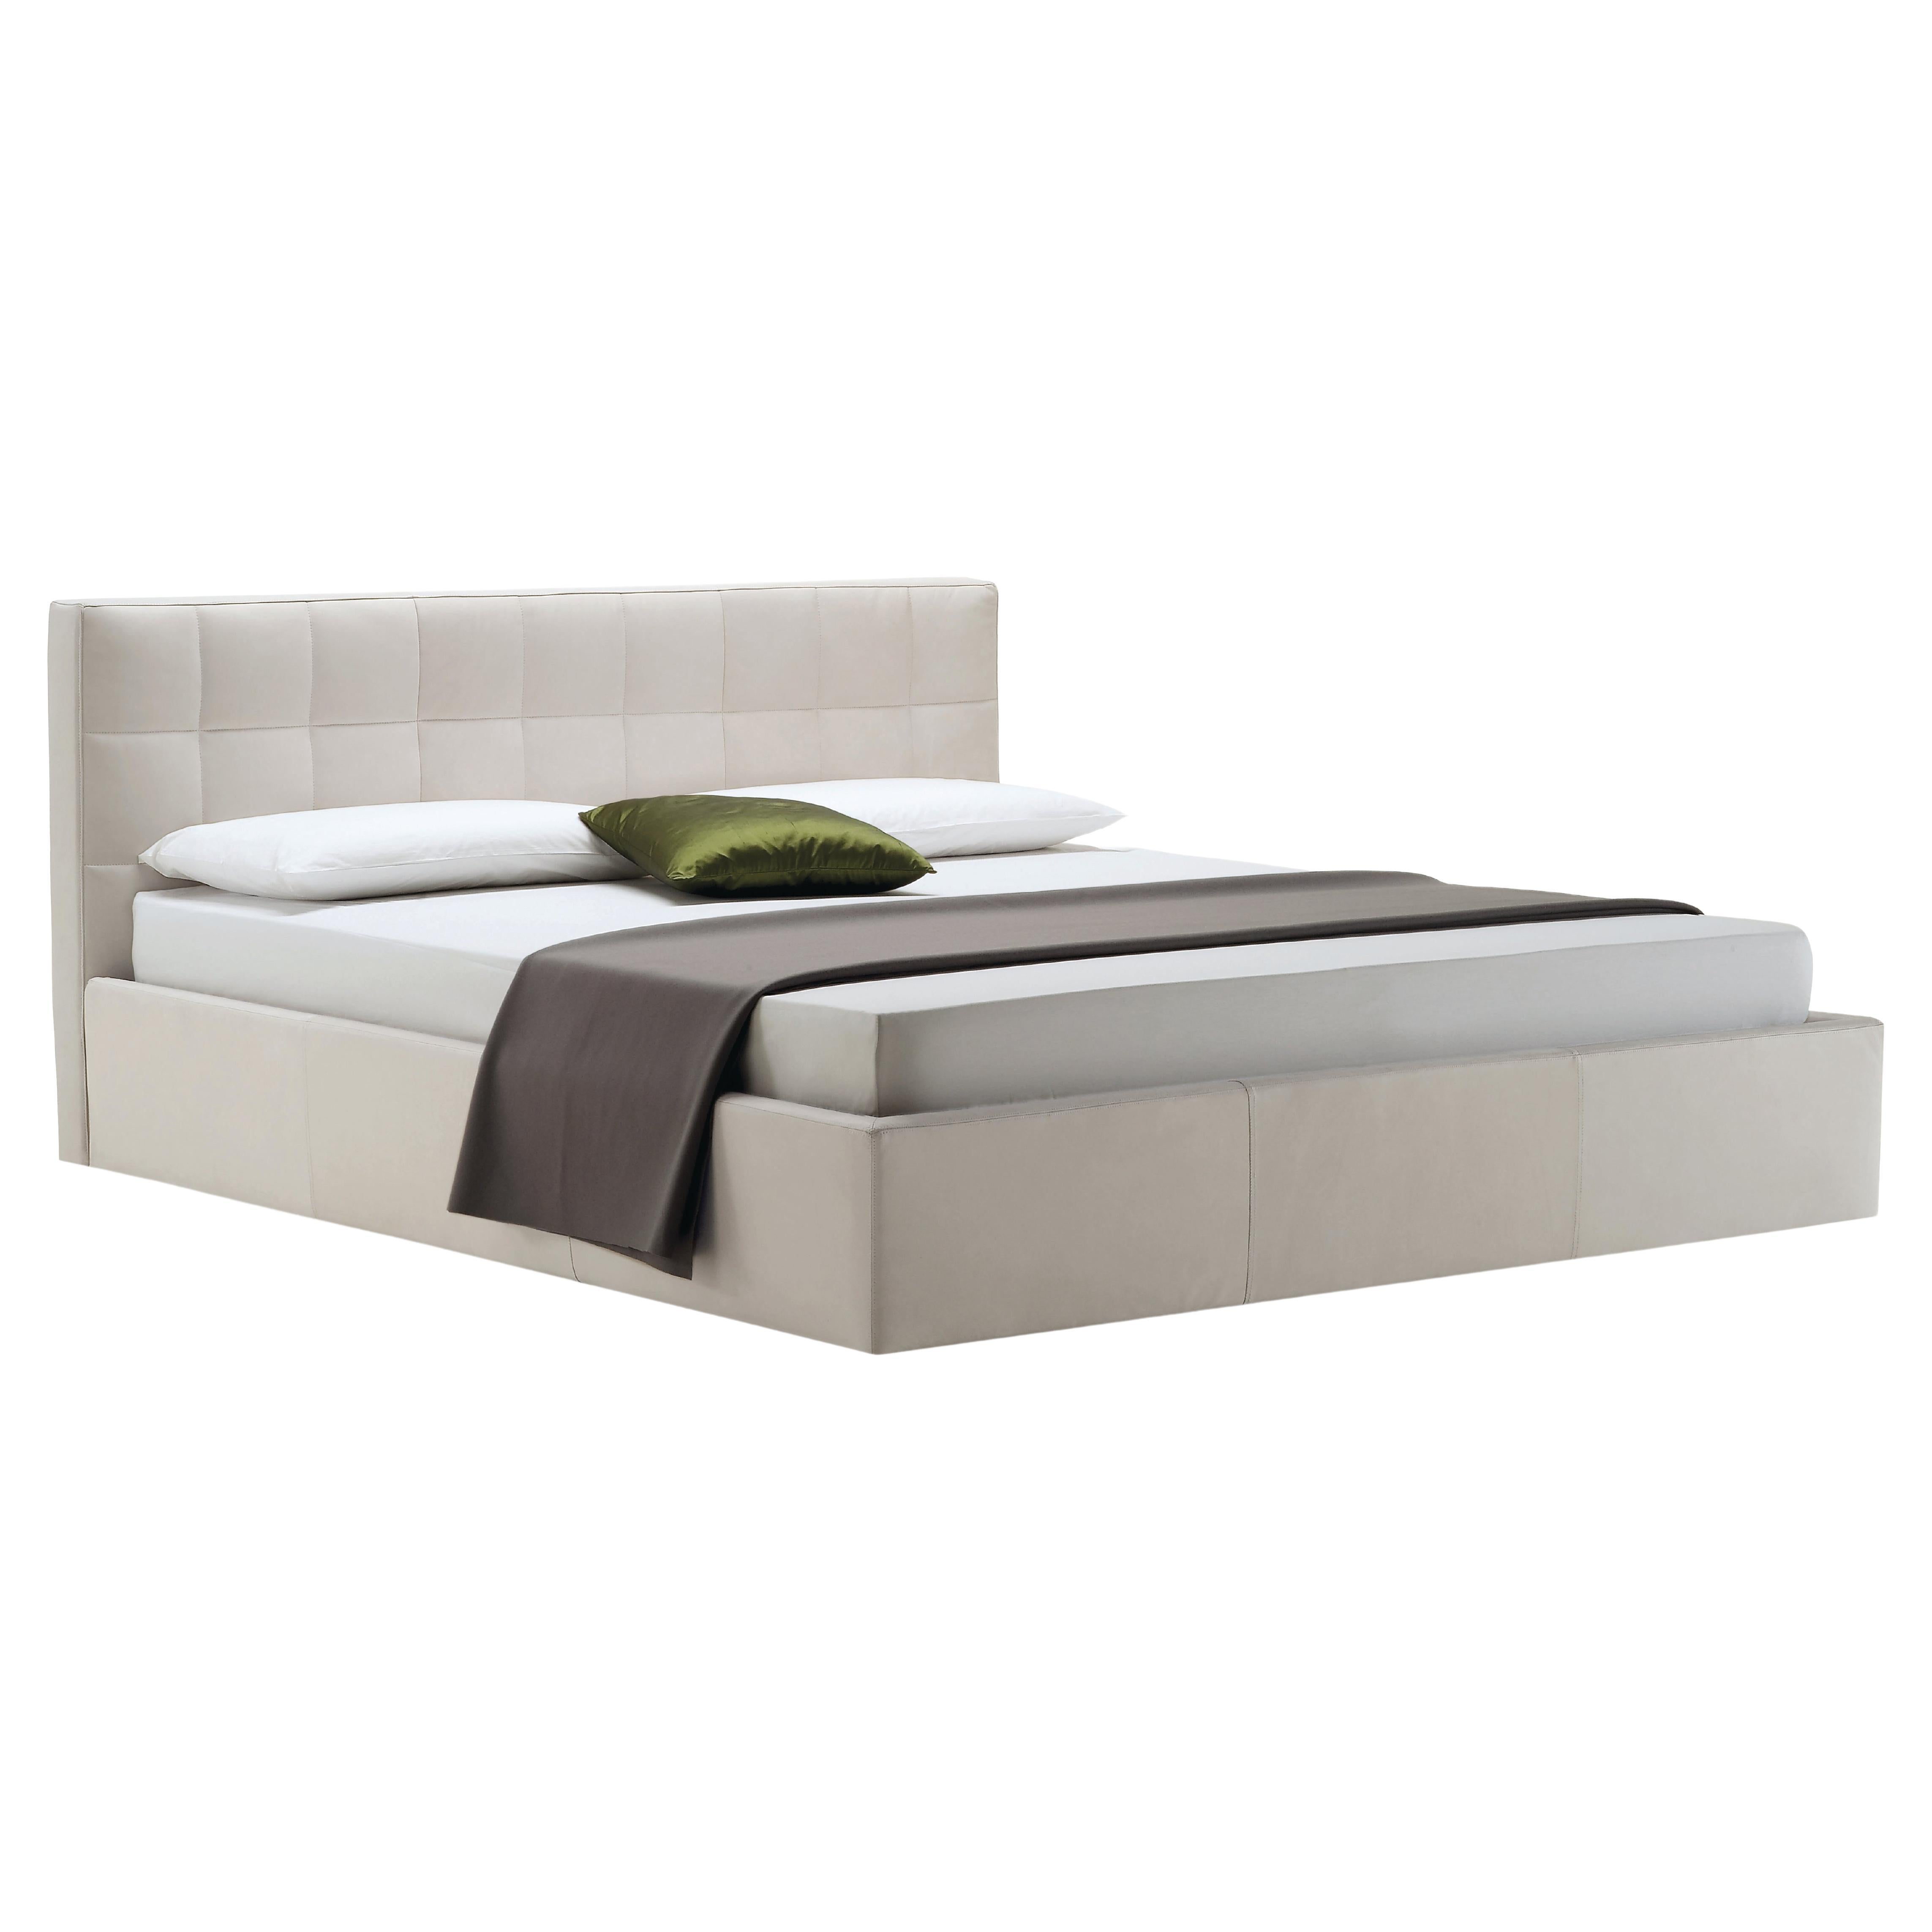 Zanotta Queen Size Box-Bett mit Beige-Polsterung und Stahlrahmen im Angebot